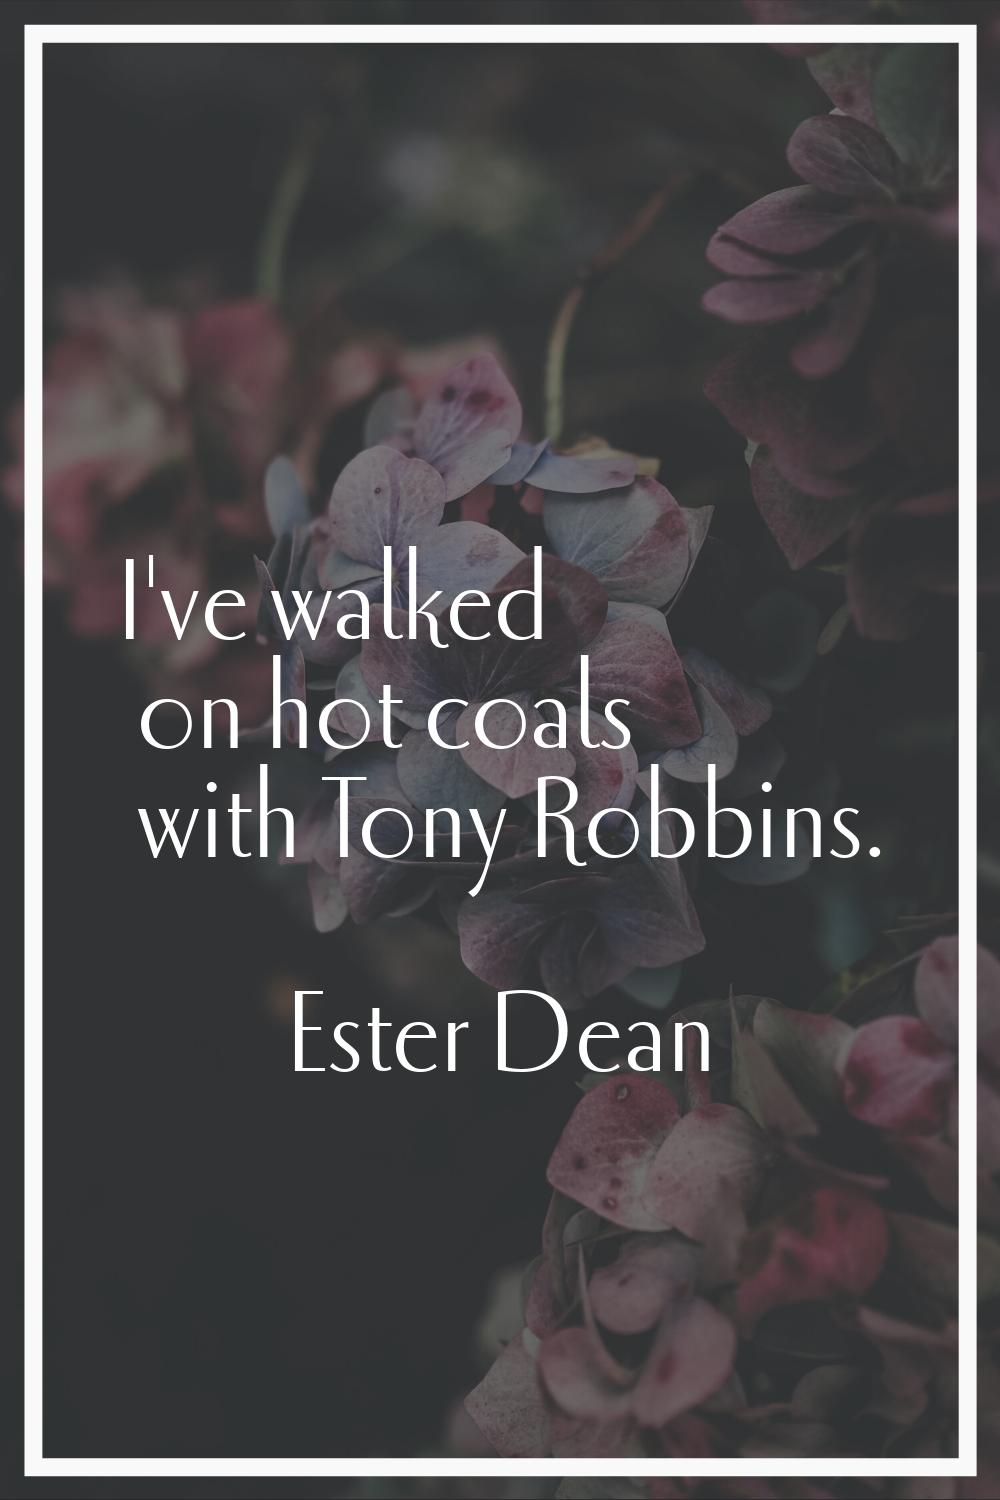 I've walked on hot coals with Tony Robbins.